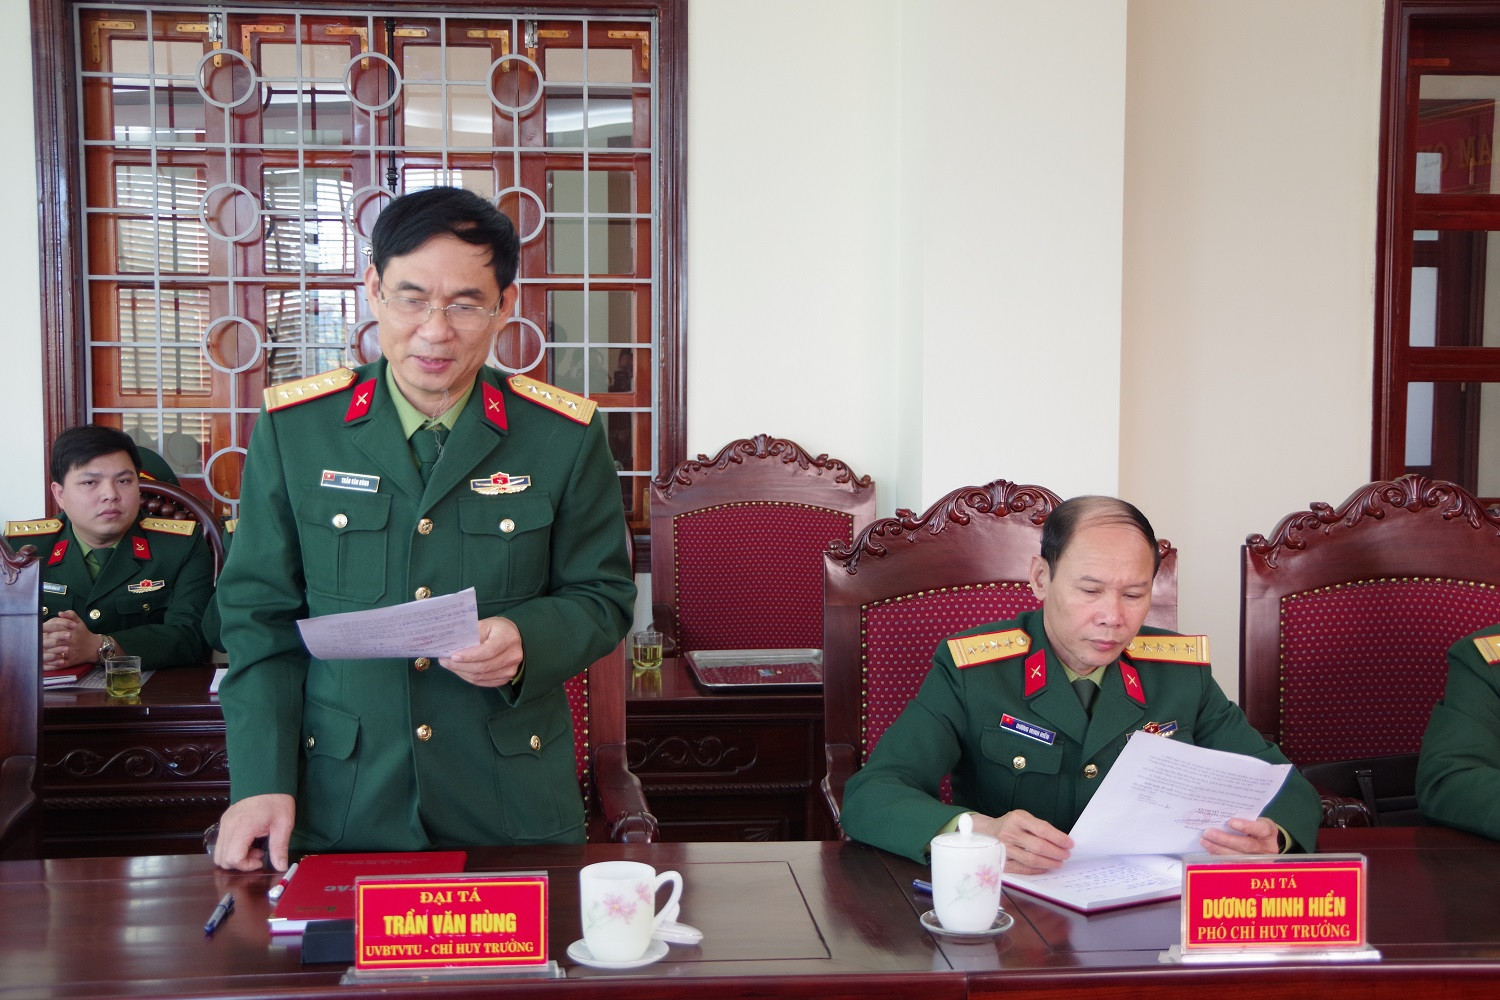 Đại tá Trần Văn Hùng, Ủy viên BTV Tỉnh ủy, Chỉ huy truongr Bộ CHQS tỉnh báo cáo kết quả công tác hậu cần chuẩn bị cho mùa huấn luyện 2019 của LLVT tỉnh (Hoàng Anh)